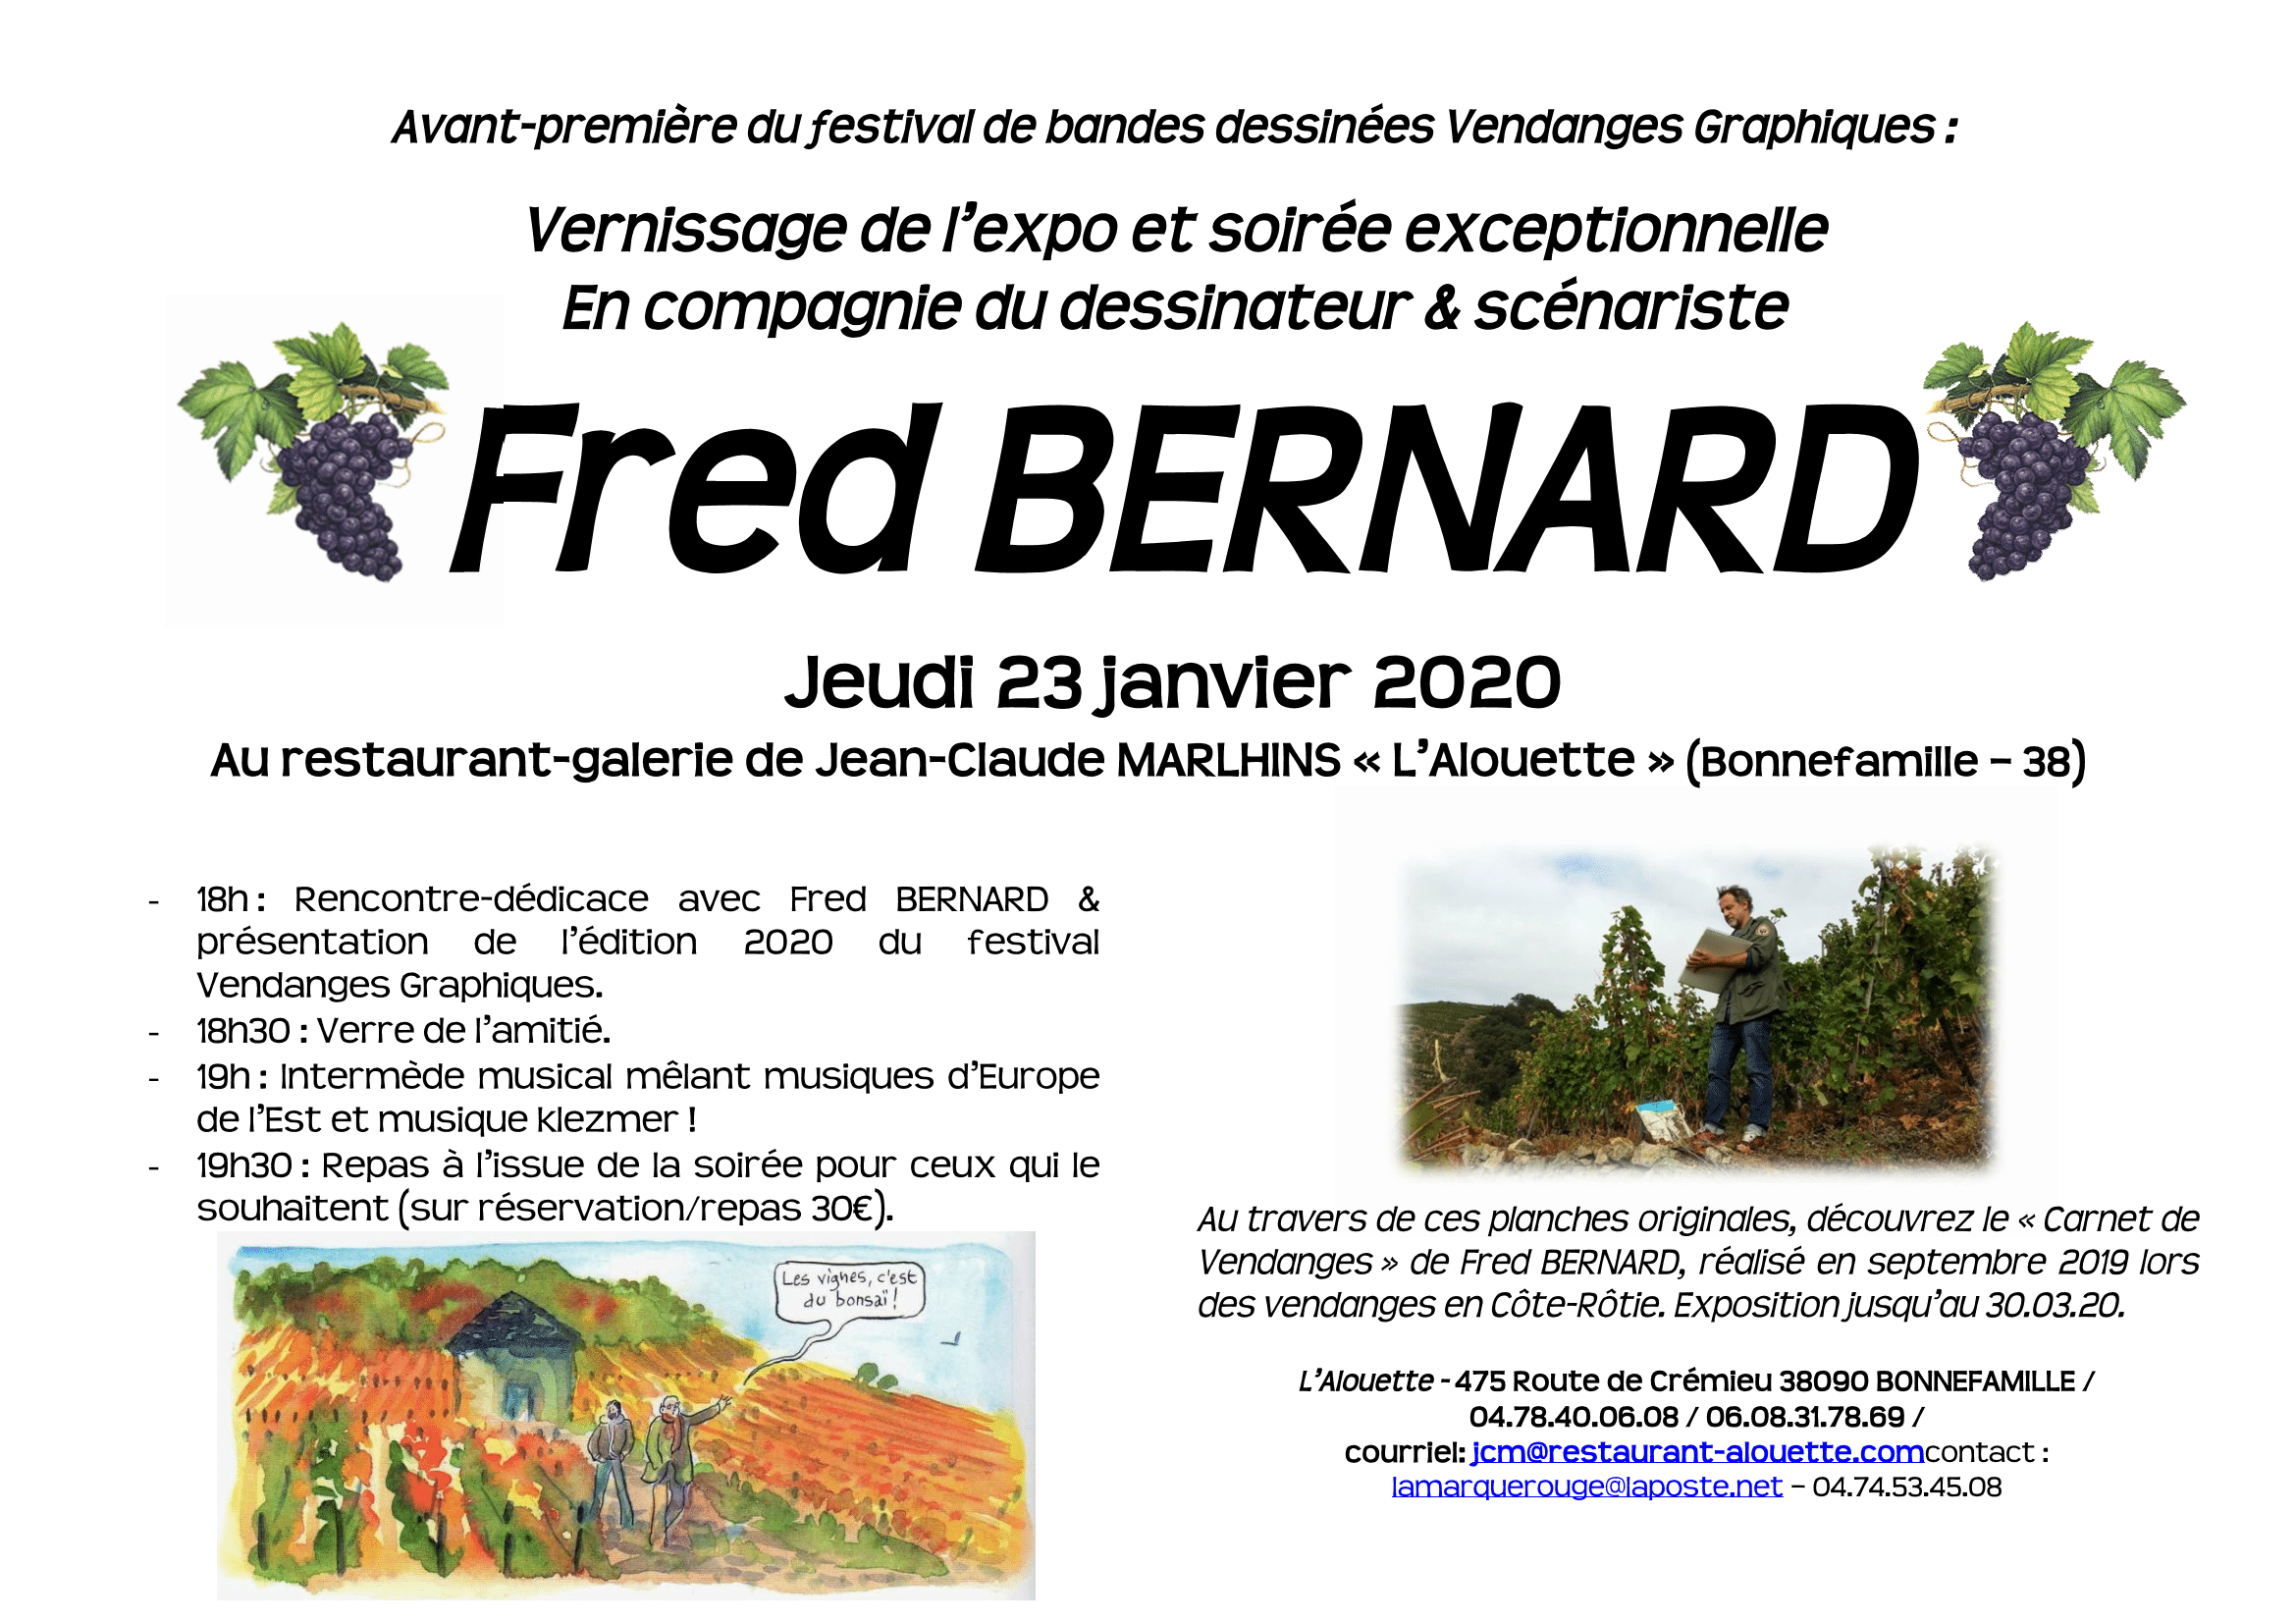 FRED BERNARD